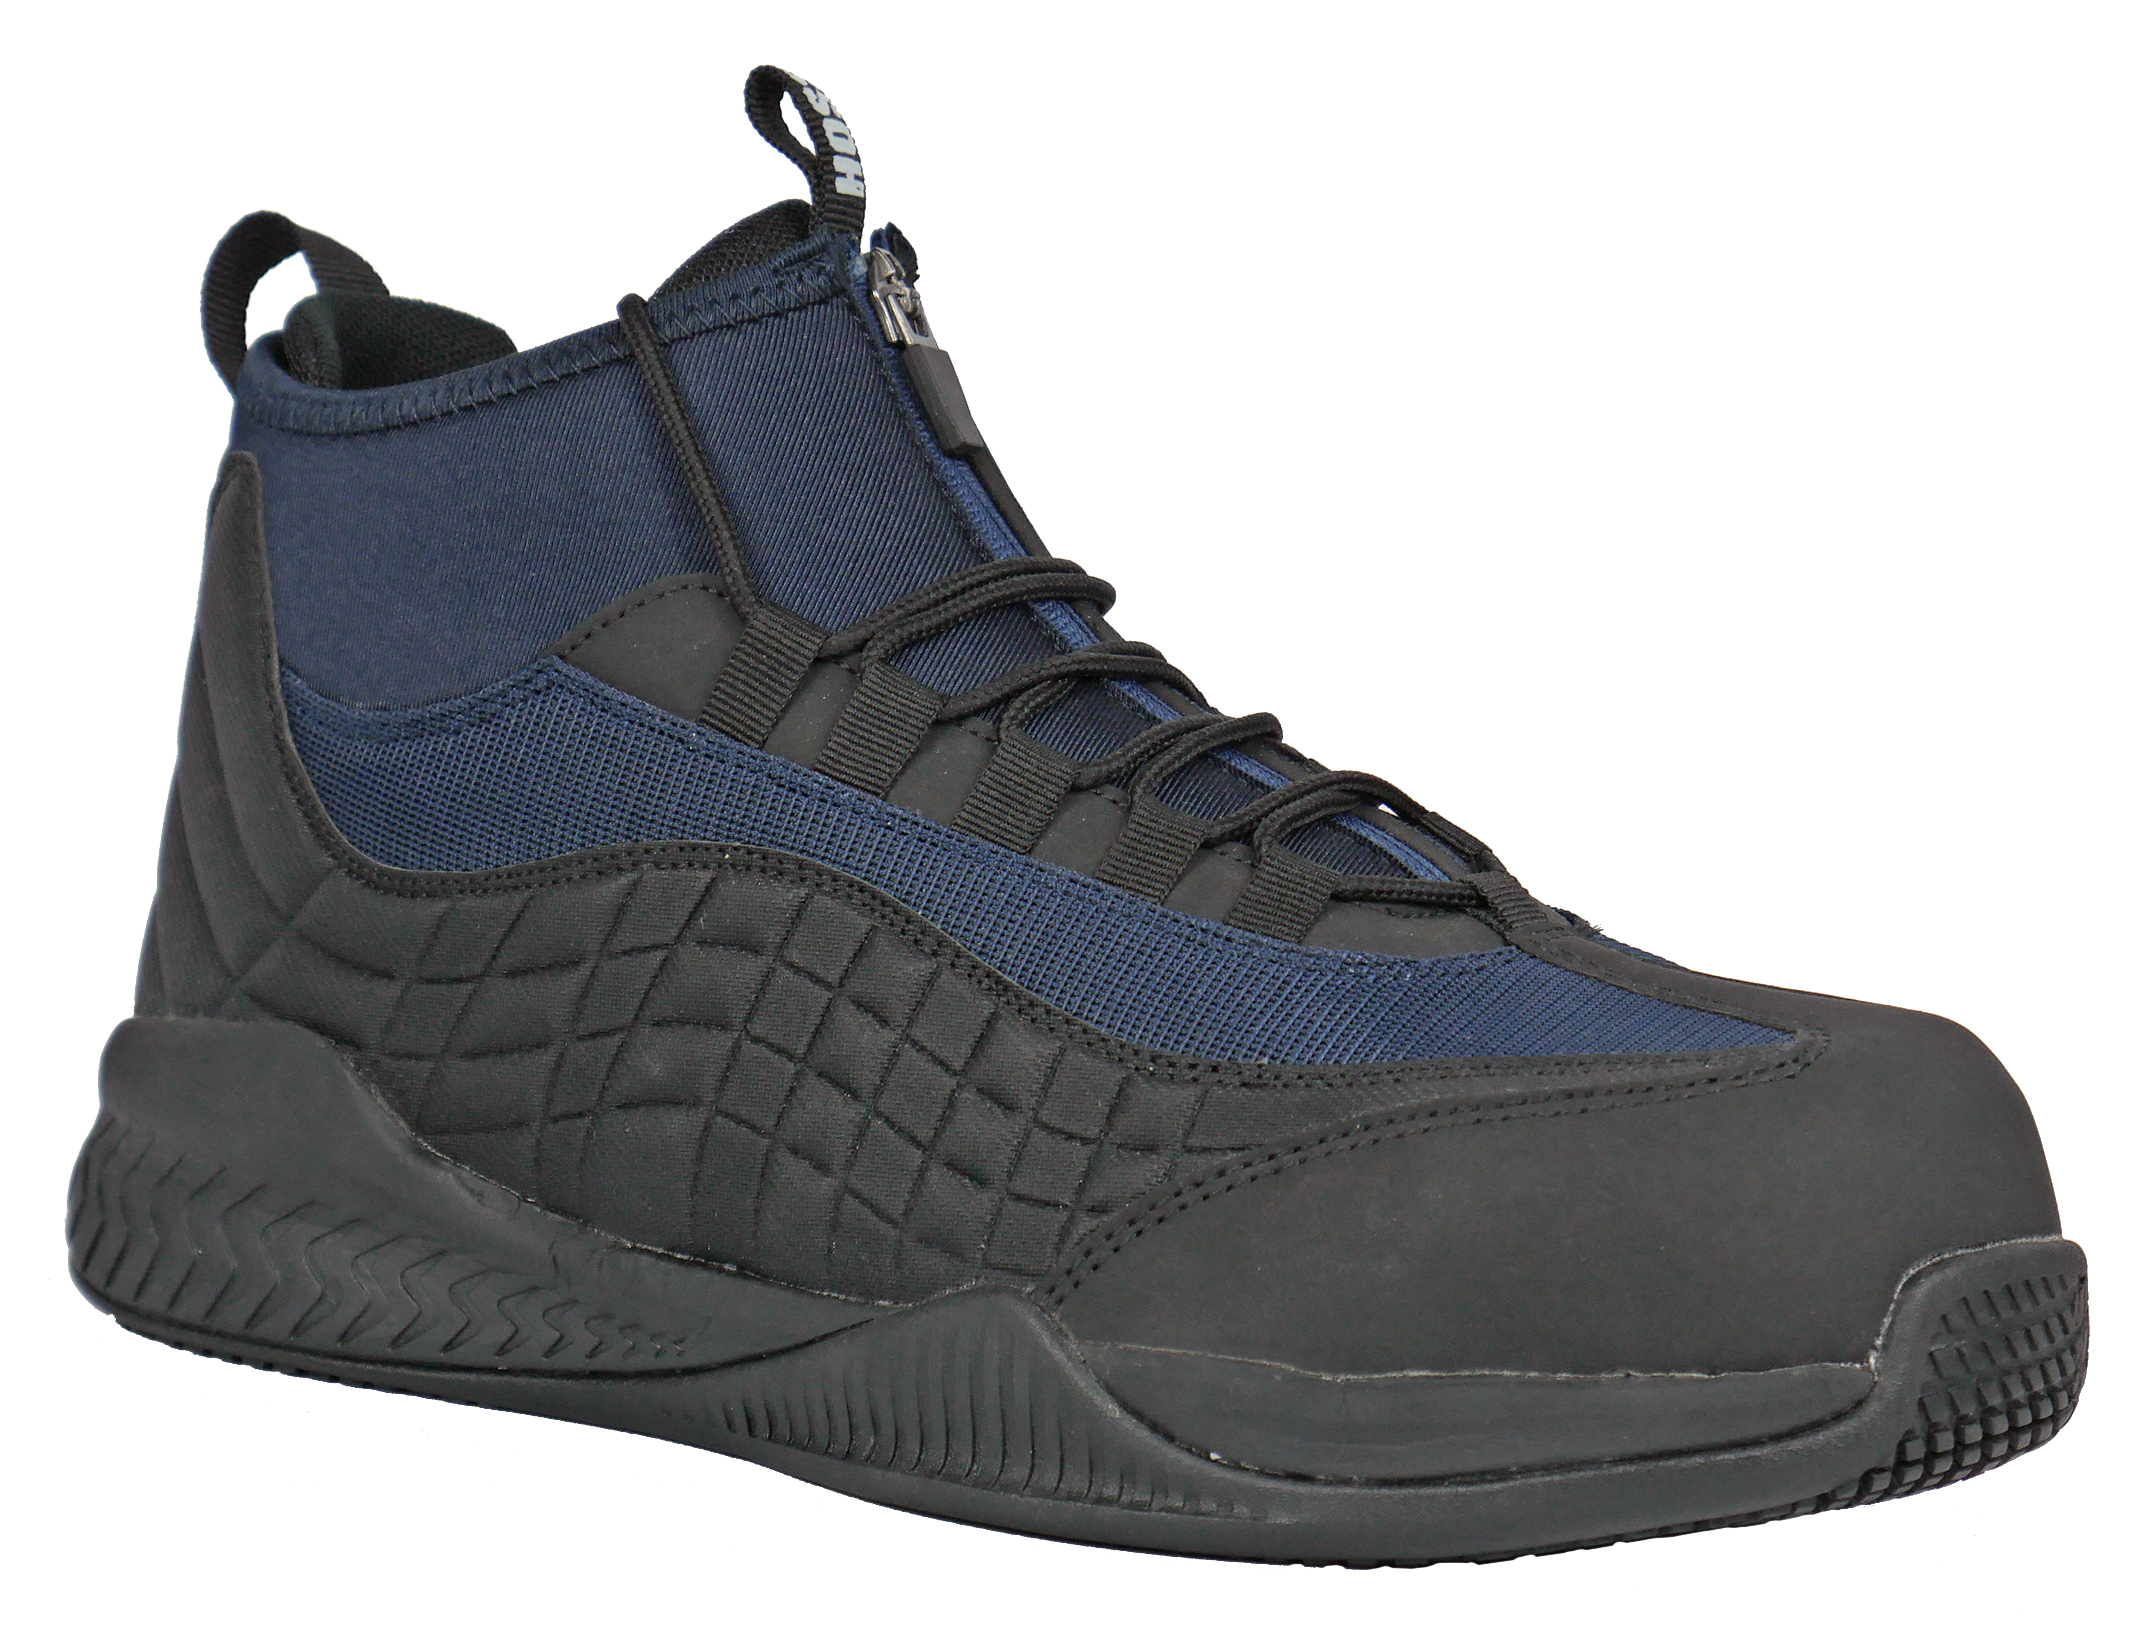 HOSS Boots Men's Full Court Composite Toe Hi Top Work Shoe Sneakers - image 1 of 5